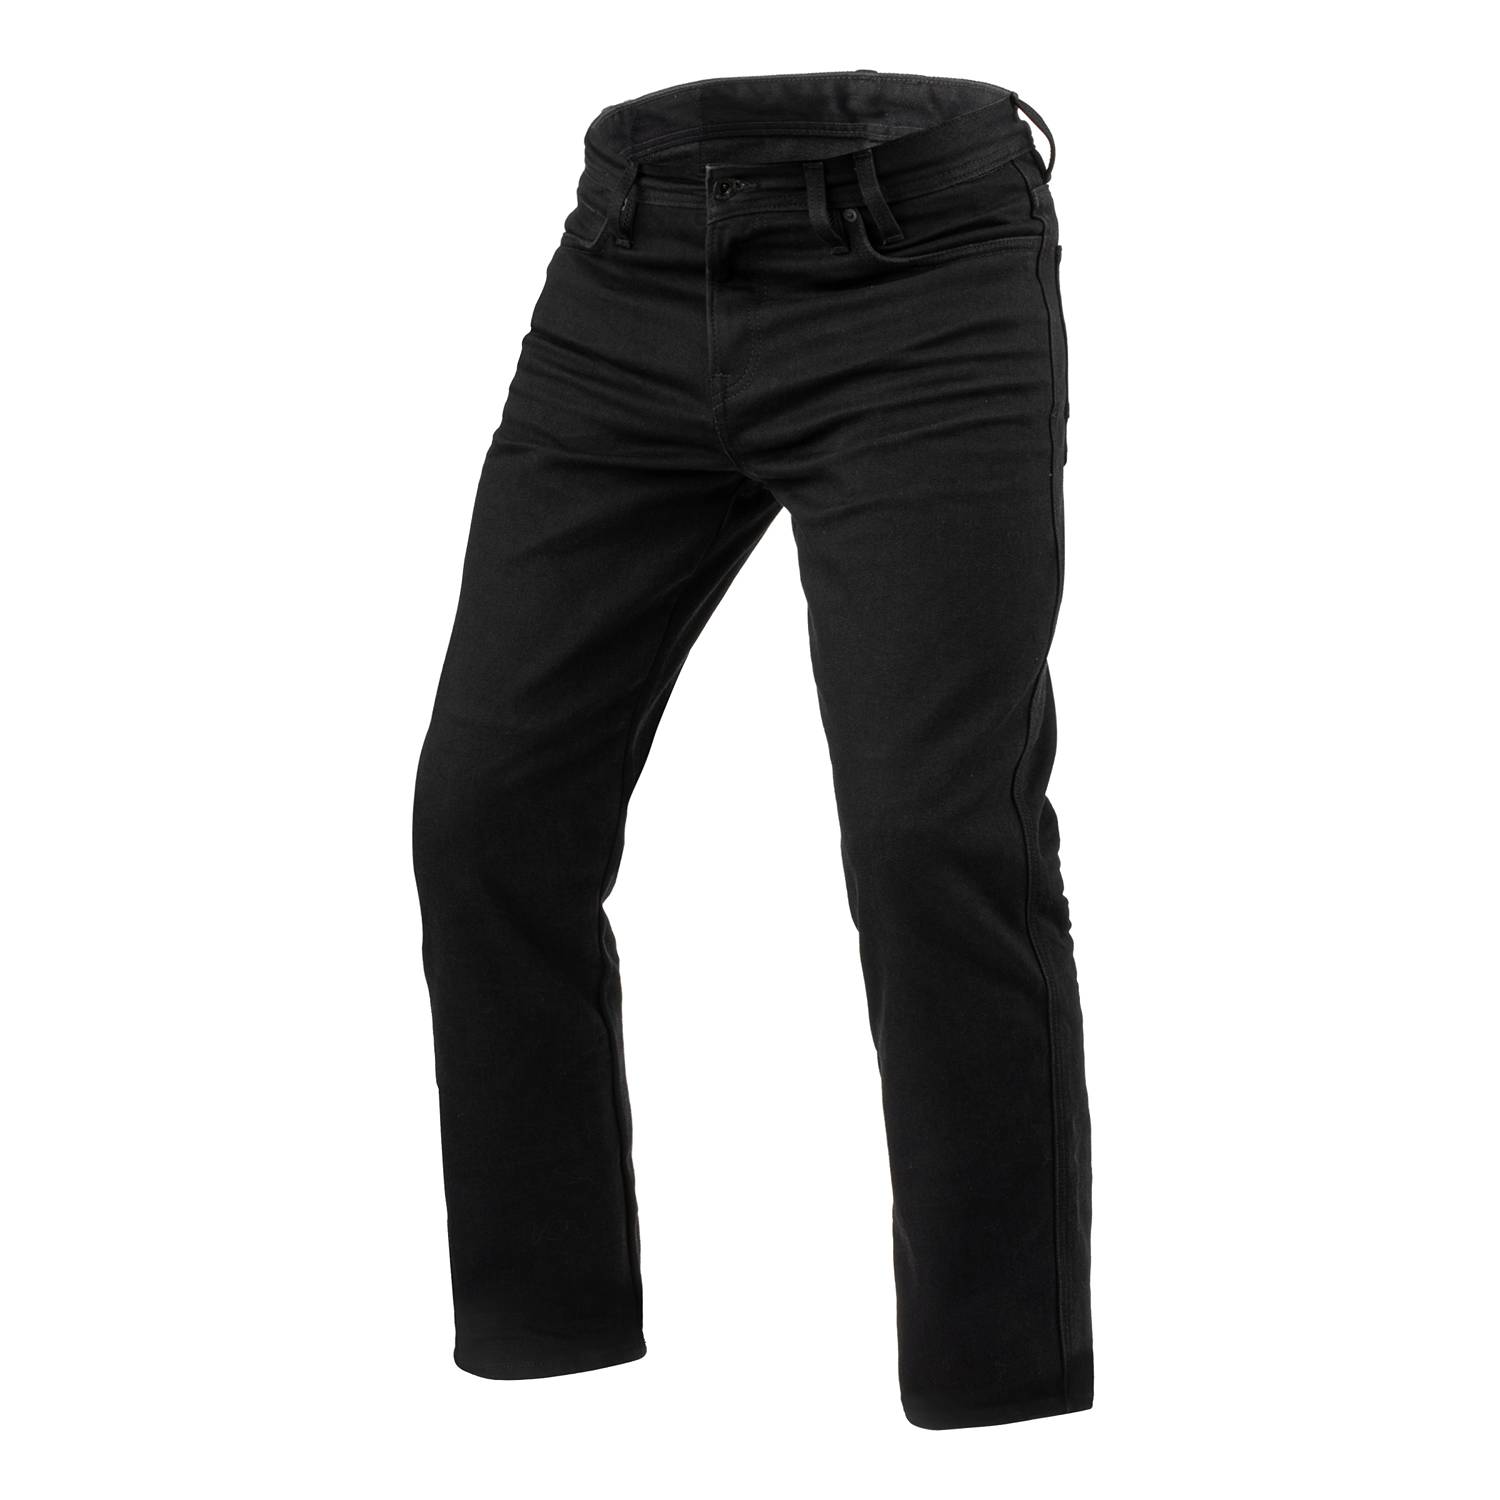 Image of REV'IT! Jeans Lombard 3 RF Black L36 Motorcycle Jeans Size L36/W30 EN